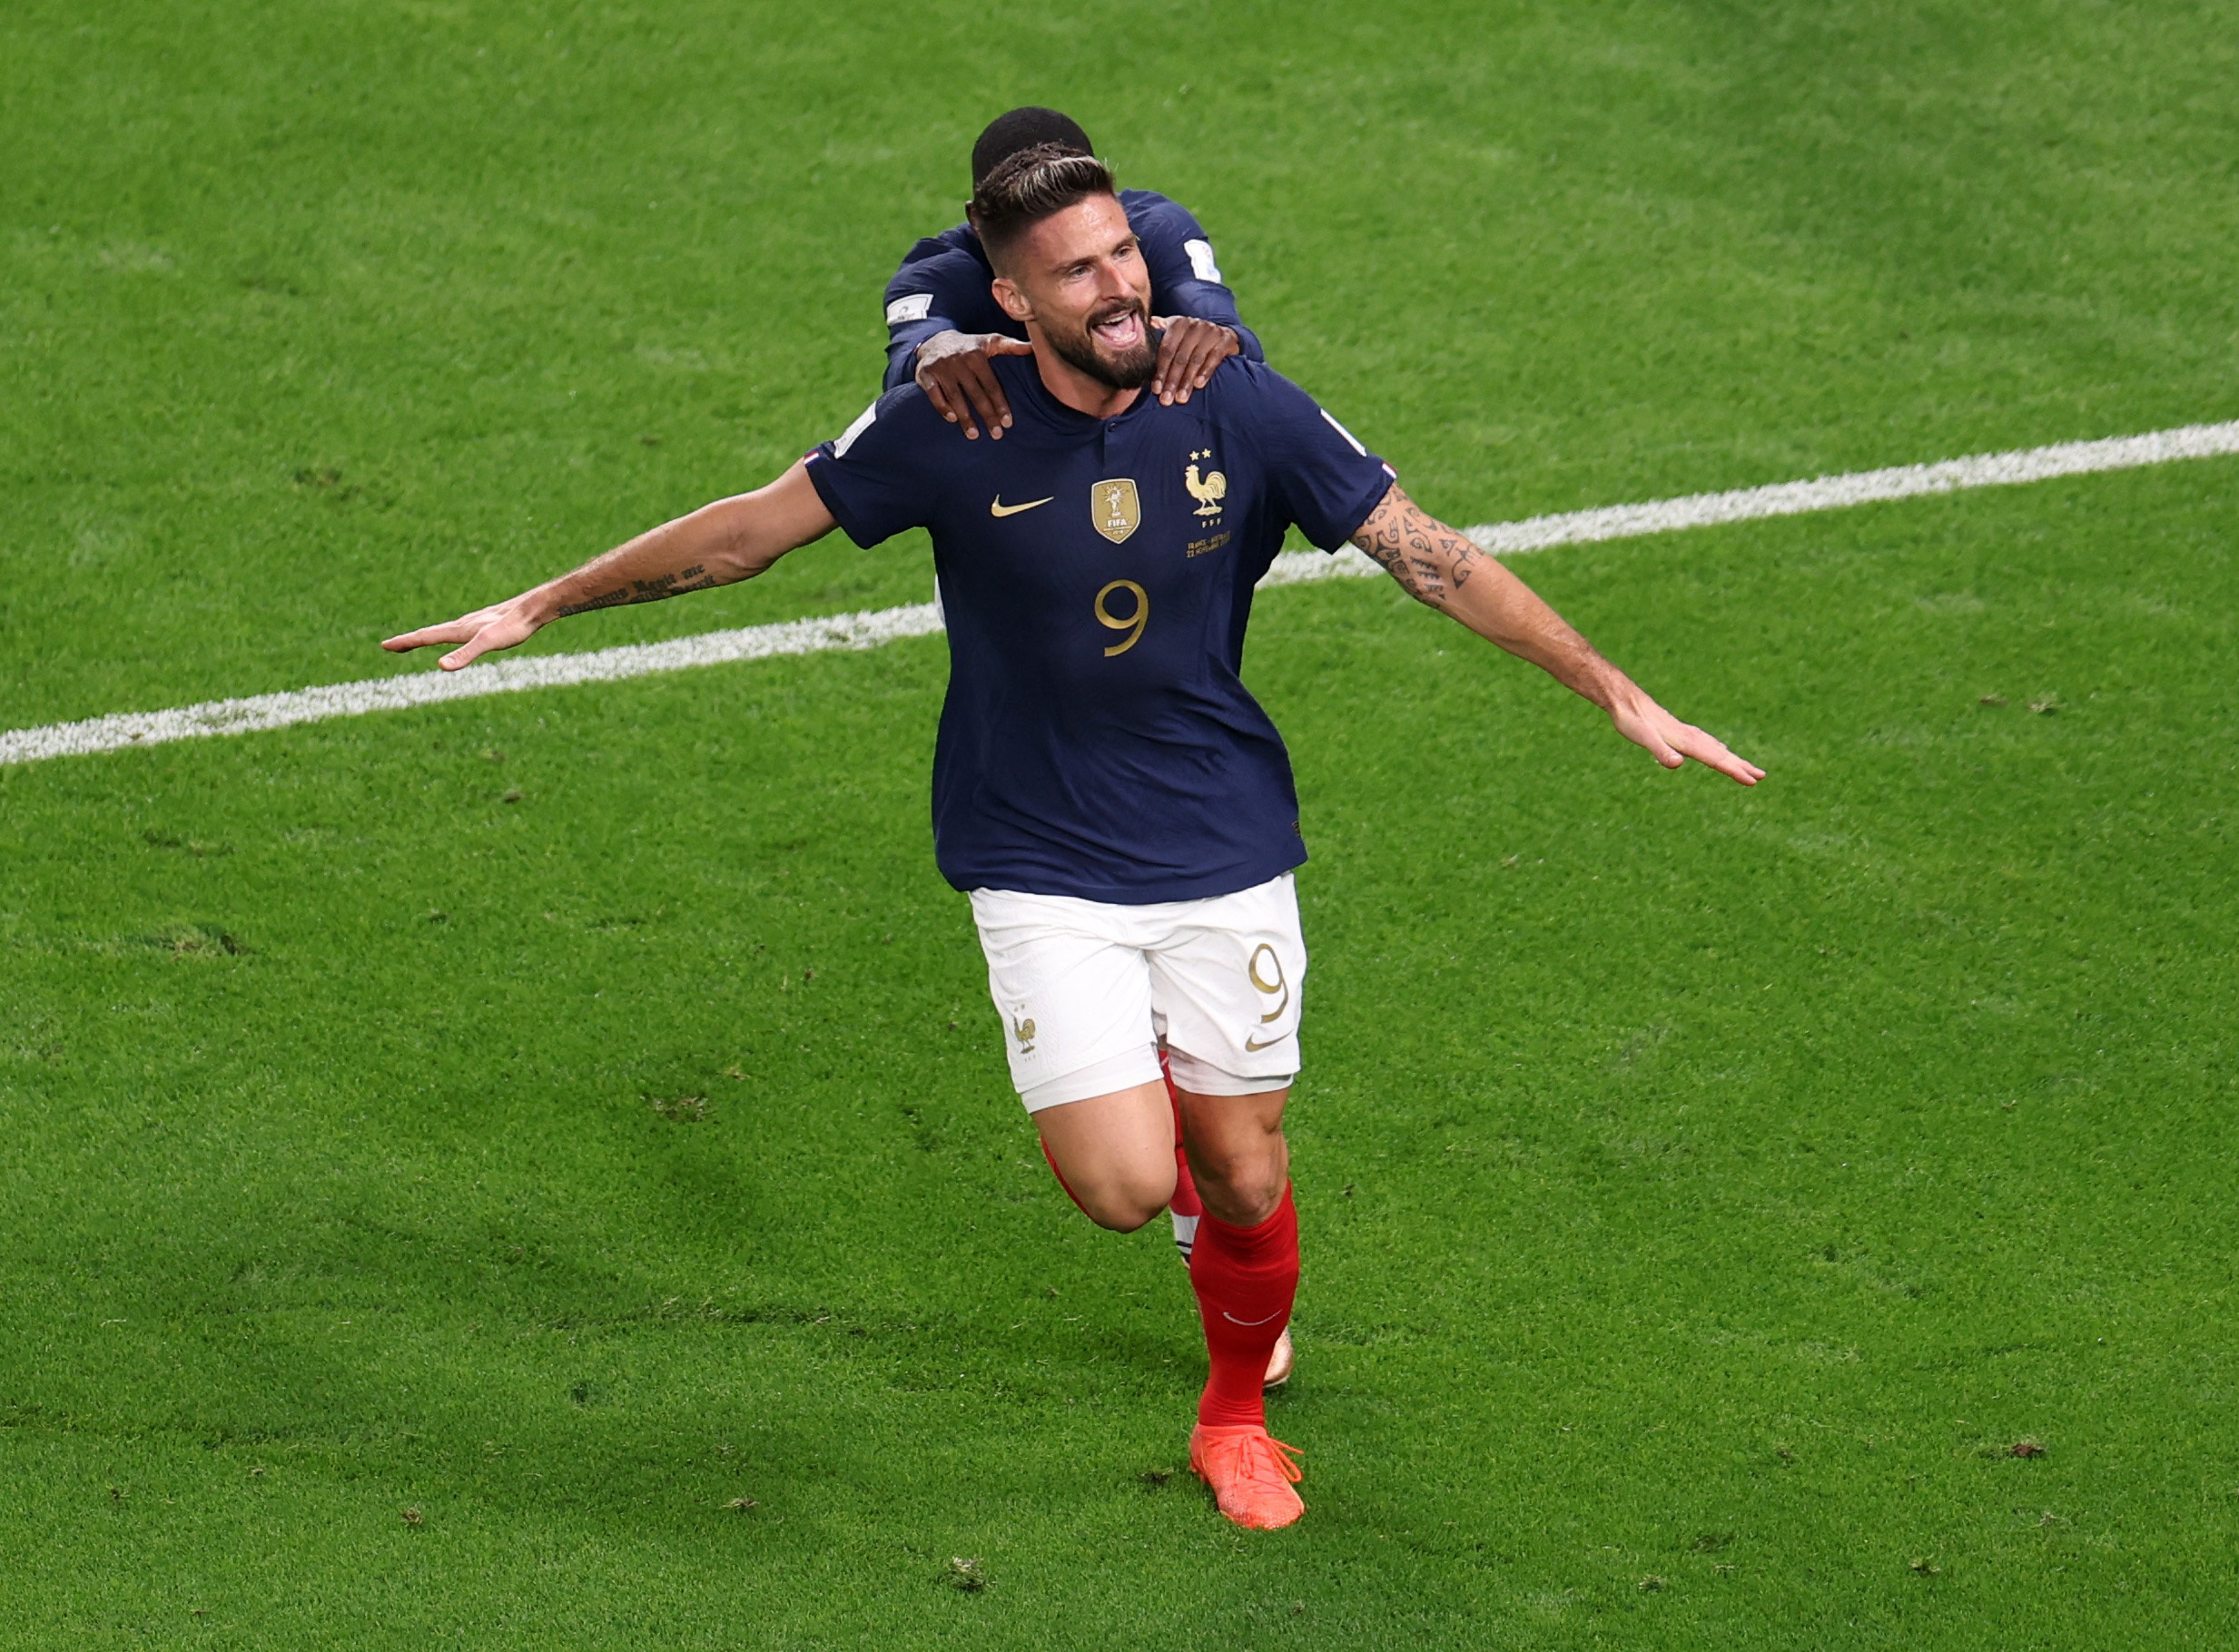 Olivier Giroud marcó el segundo gol de Francia ante Australia. El delantero llegó a los 50 tantos con la camiseta de su seleccionado (REUTERS/Molly Darlington)